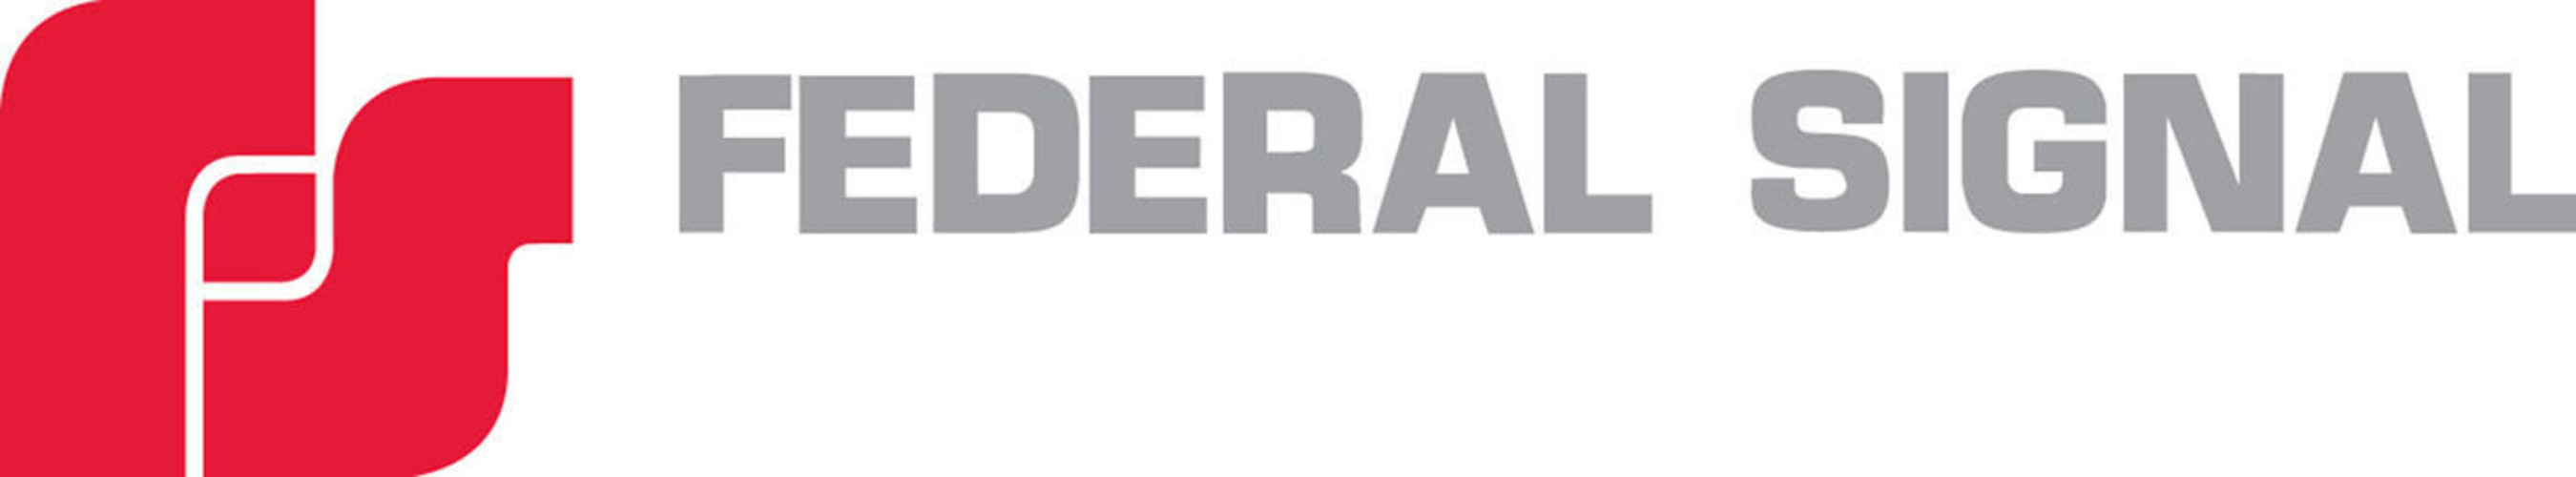 Federal Signal Corporation Logo. (PRNewsFoto/Federal Signal Corporation) (PRNewsFoto/)